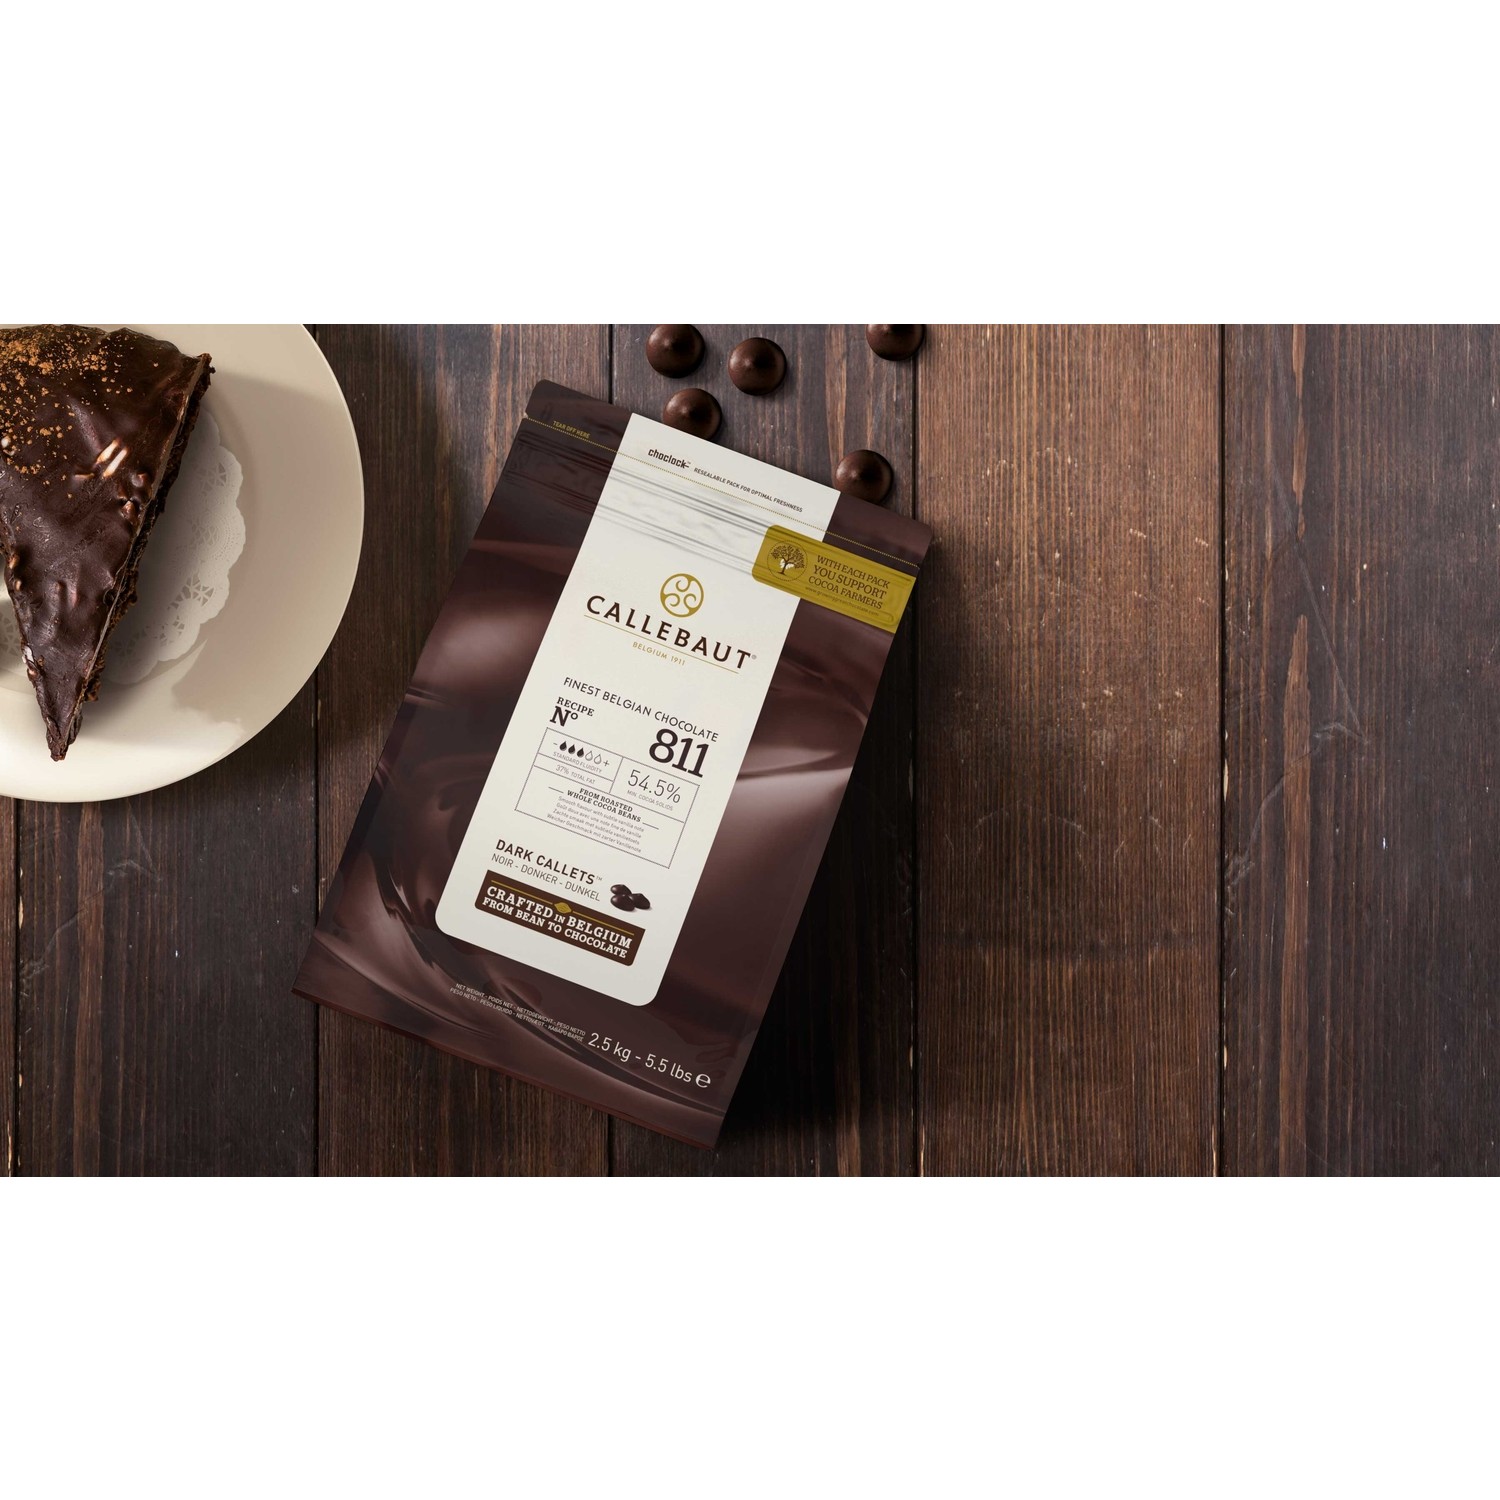 Callebaut Bitter Damla Çikolata 811 (2.5 kg) Fiyatı